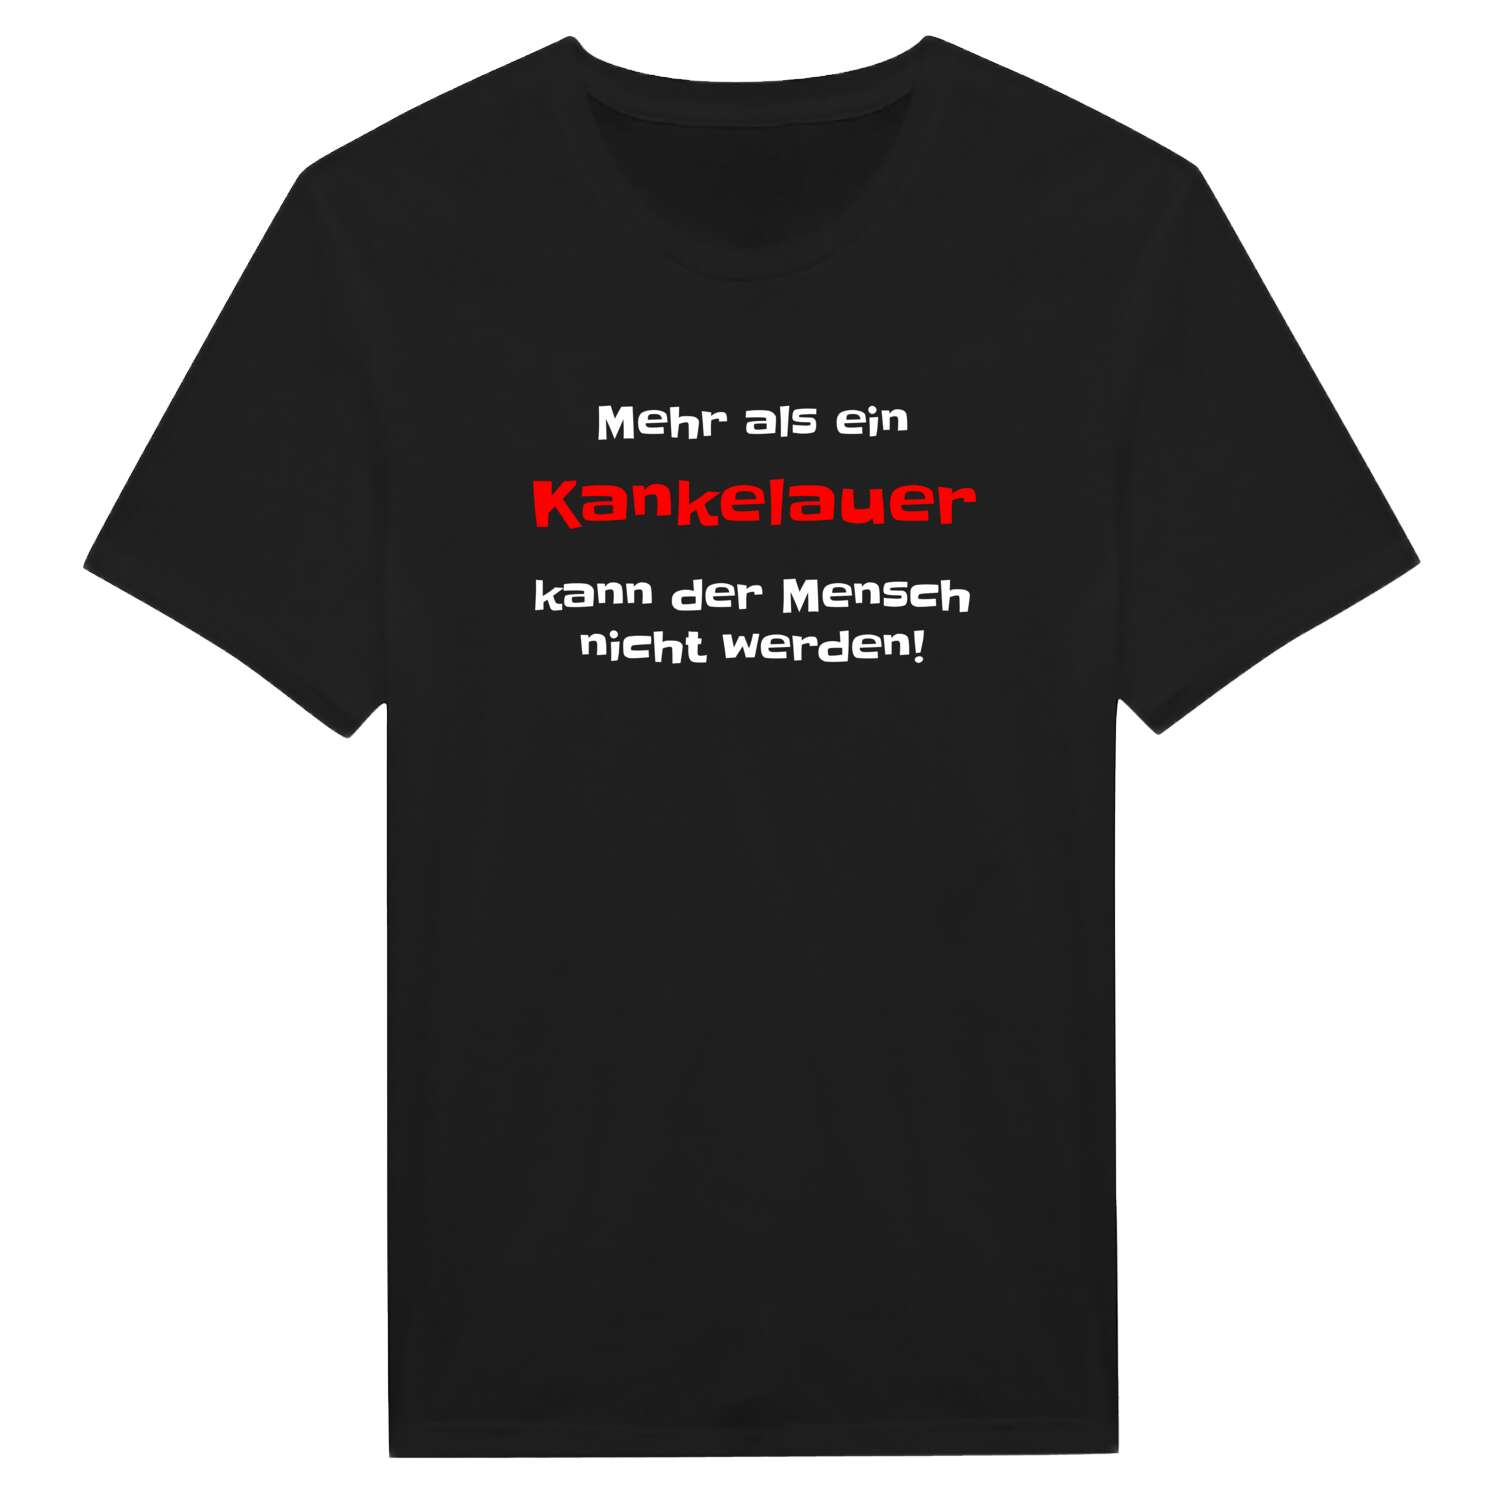 Kankelau T-Shirt »Mehr als ein«